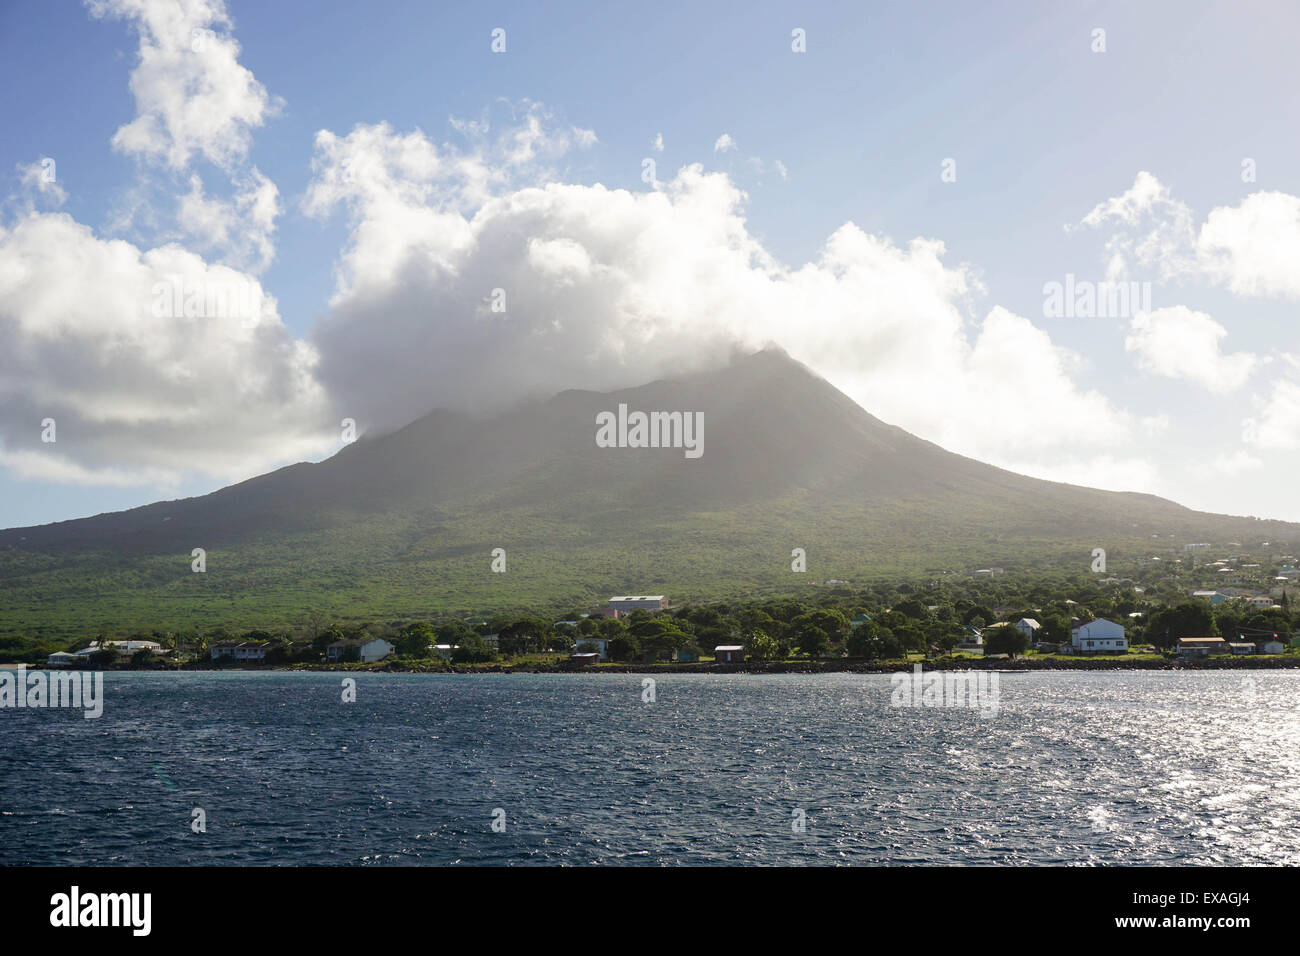 Mount Nevis, Saint Kitts et Nevis, Iles sous le vent, Antilles, Caraïbes, Amérique Centrale Banque D'Images